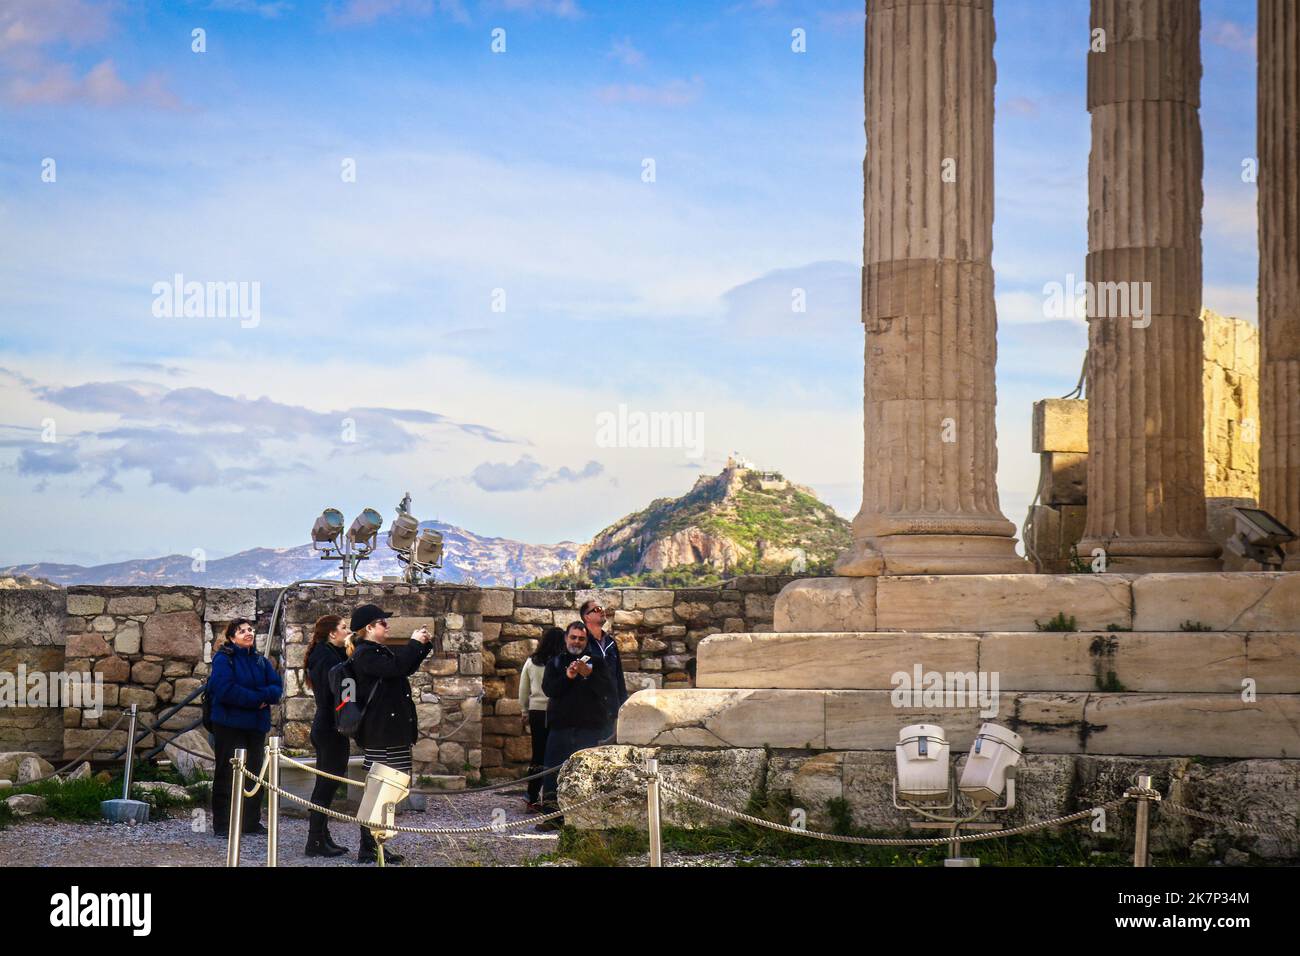 2018 01 03 Athen Griechenland - Touristen auf Akropolis fotografieren Ruinen mit dem Hügel Lycabethus und der Kirche des Agios Georgios, die im Hintergrund sichtbar ist R Stockfoto